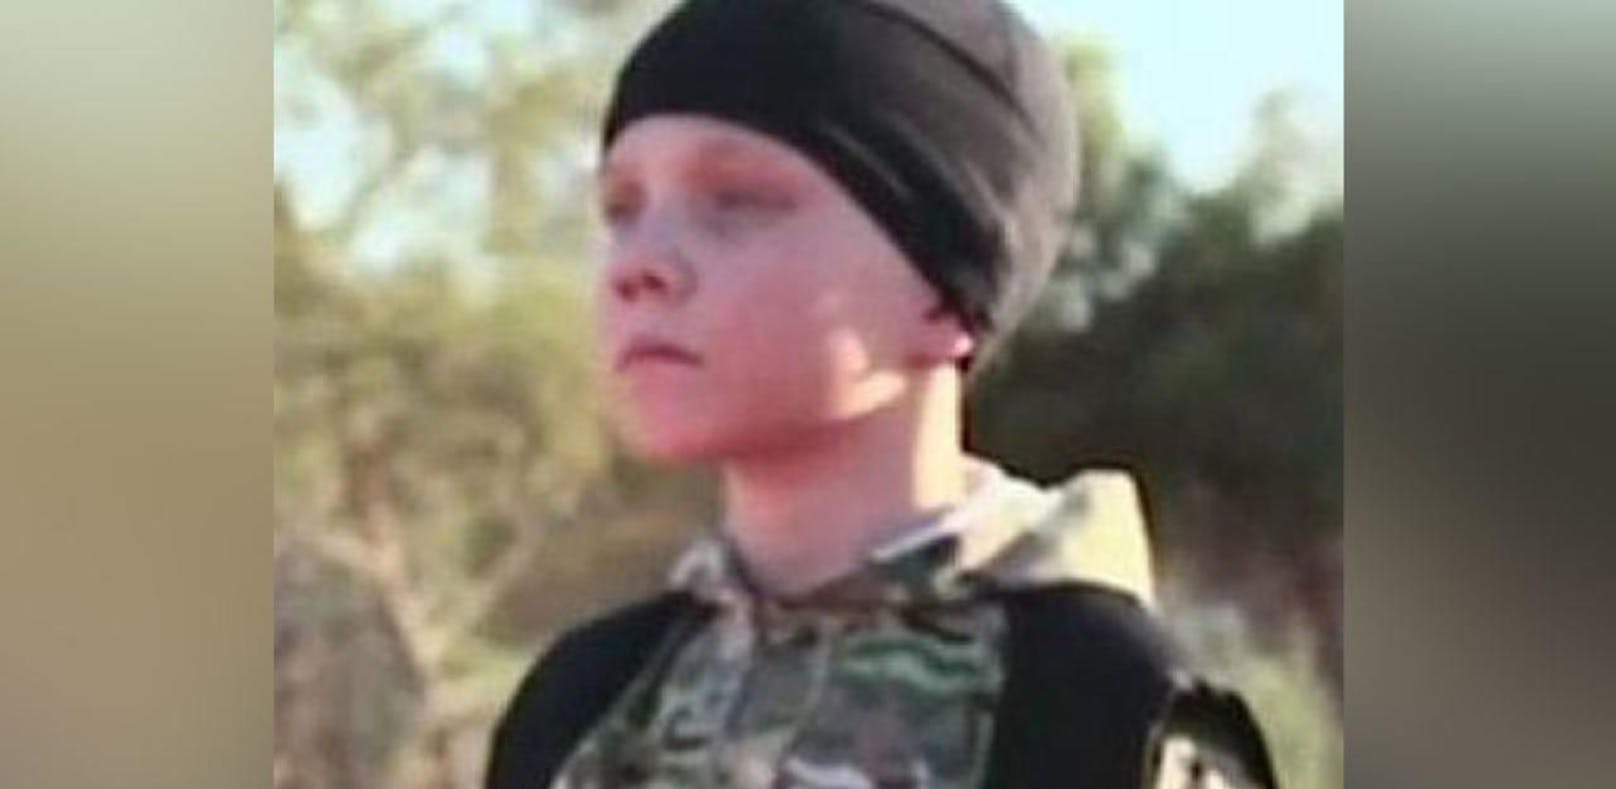 Screenshot aus einem IS-Propagandafilm: Dieser soll den 12-jährigen Jojo zeigen, den Sohn von Sally Jones. Unbestätigten Berichten zufolge starb die Britin und IS-Ausbildnerin im Juni bei einem Drohnenangriff im irakisch-syrischen Grenzgebiet. Das Schicksal ihres Kindes ist unklar.